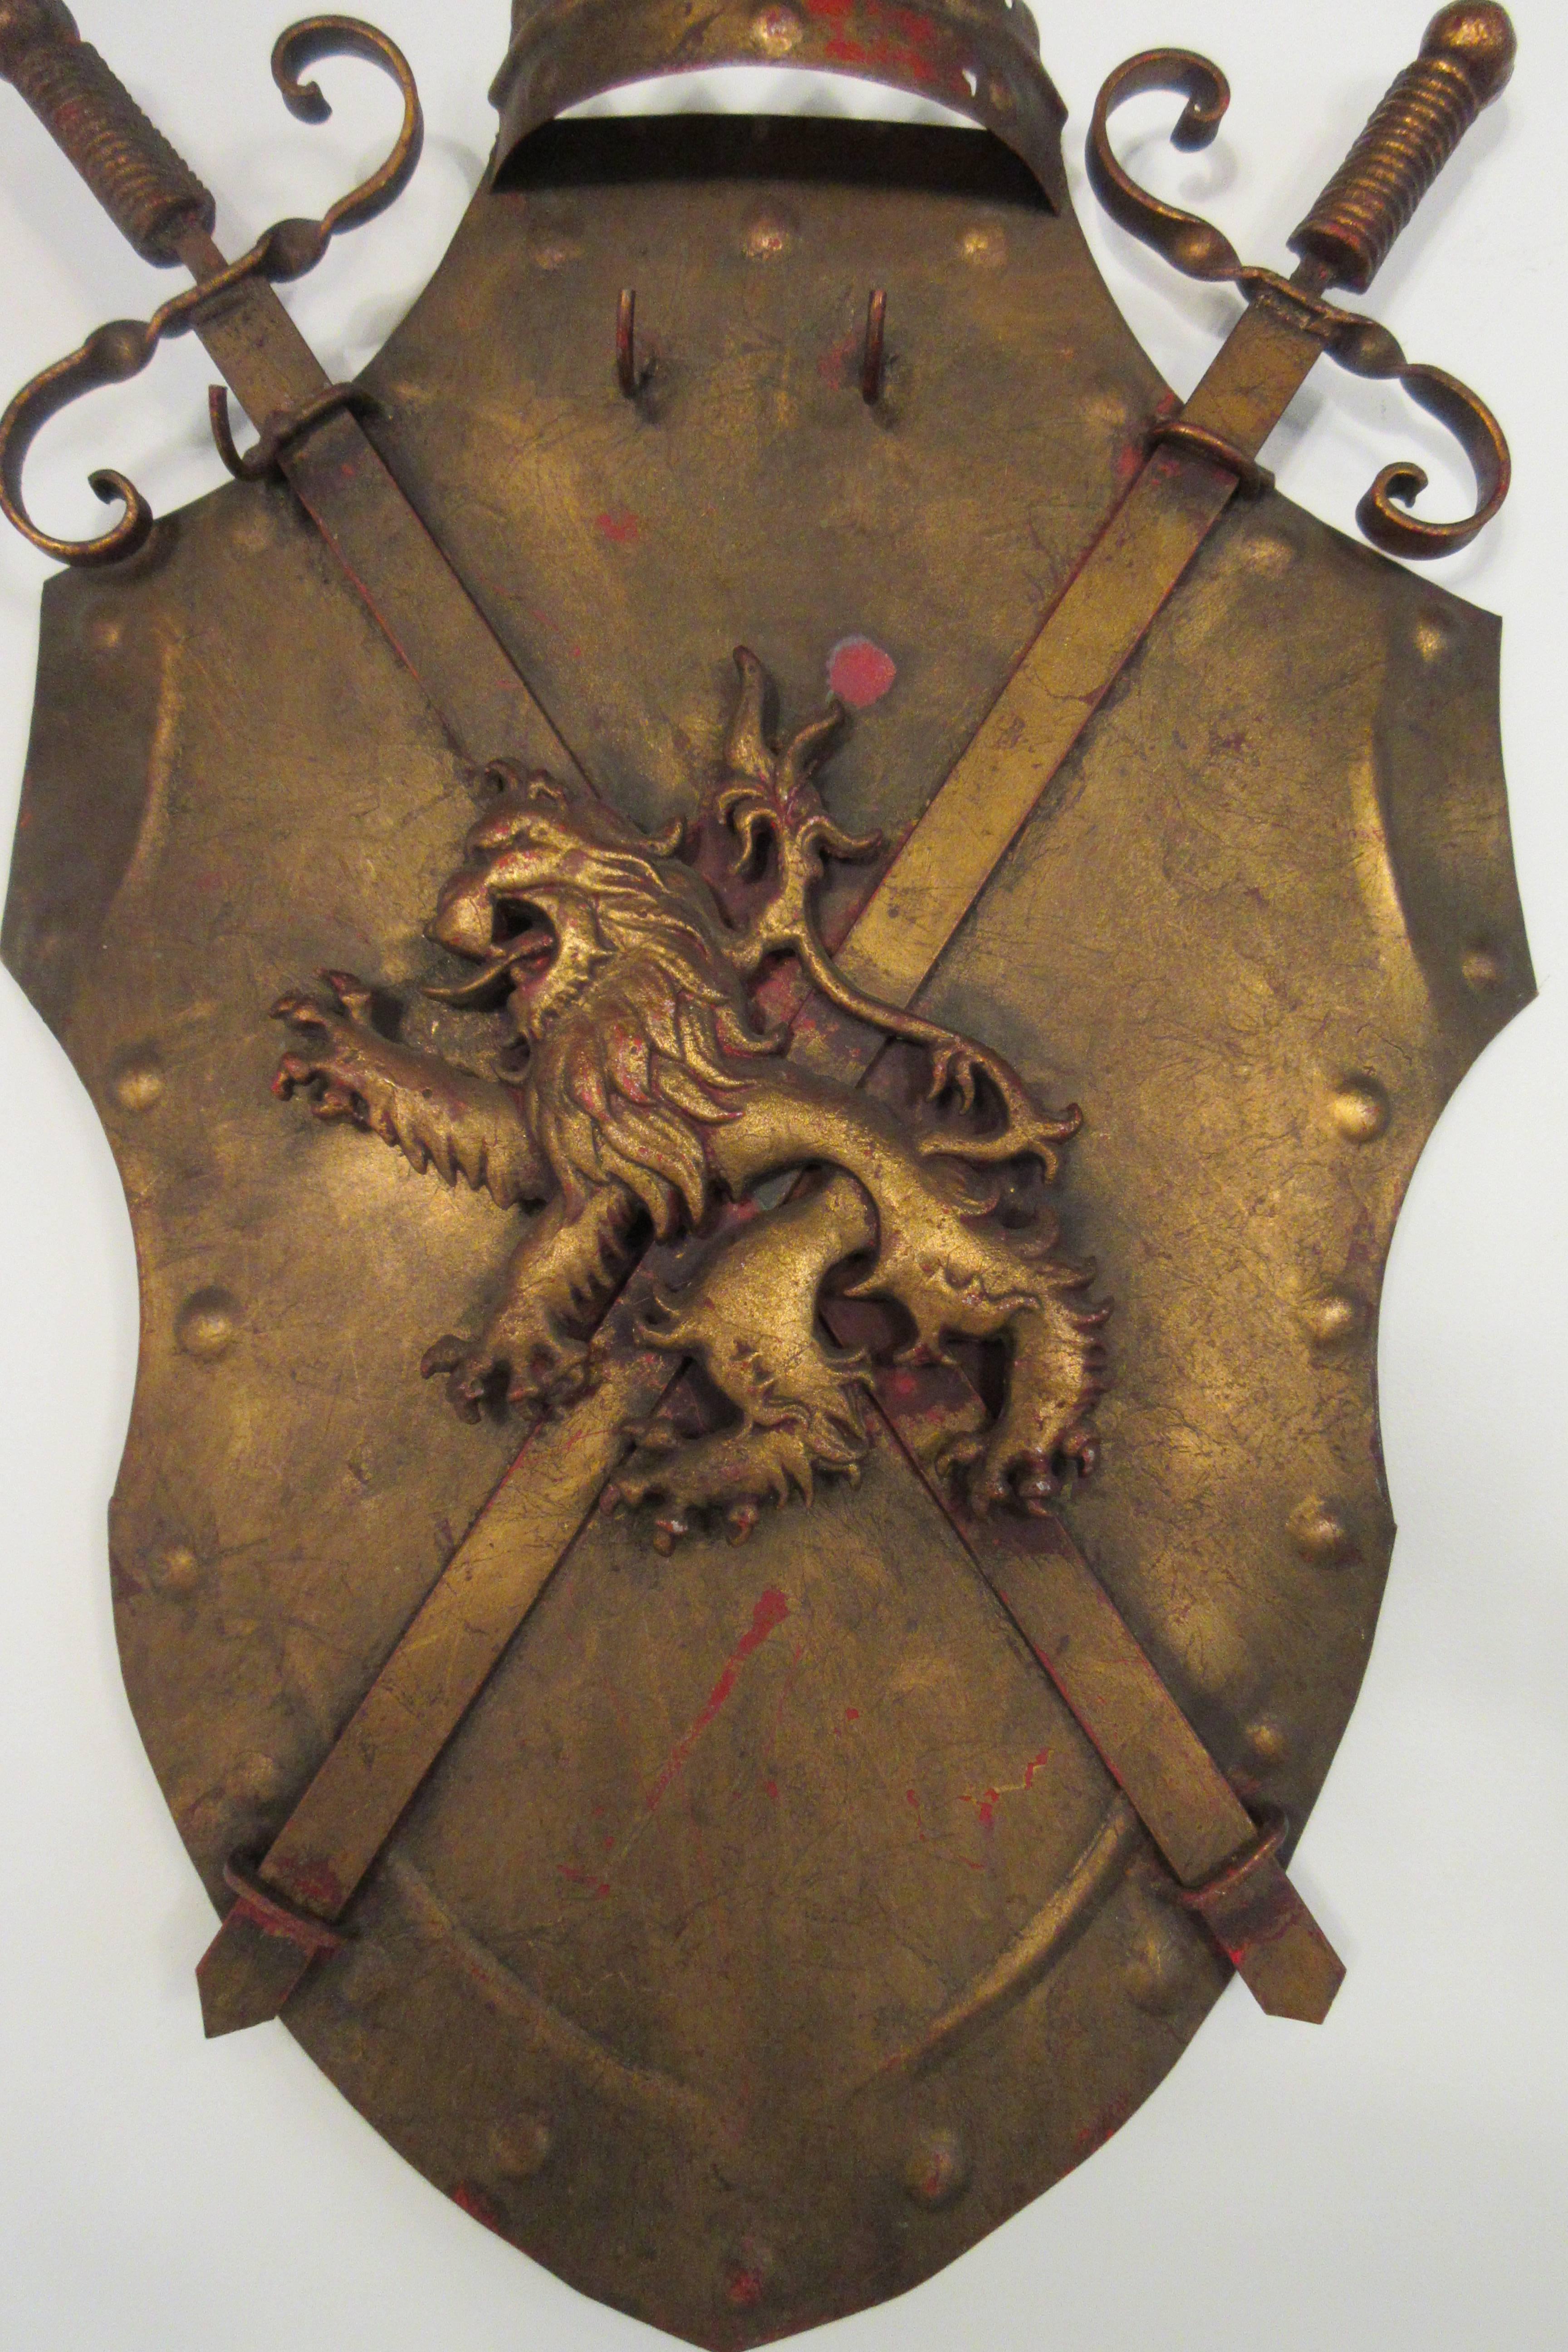 1960s Italian iron shield has three hooks and two swords.